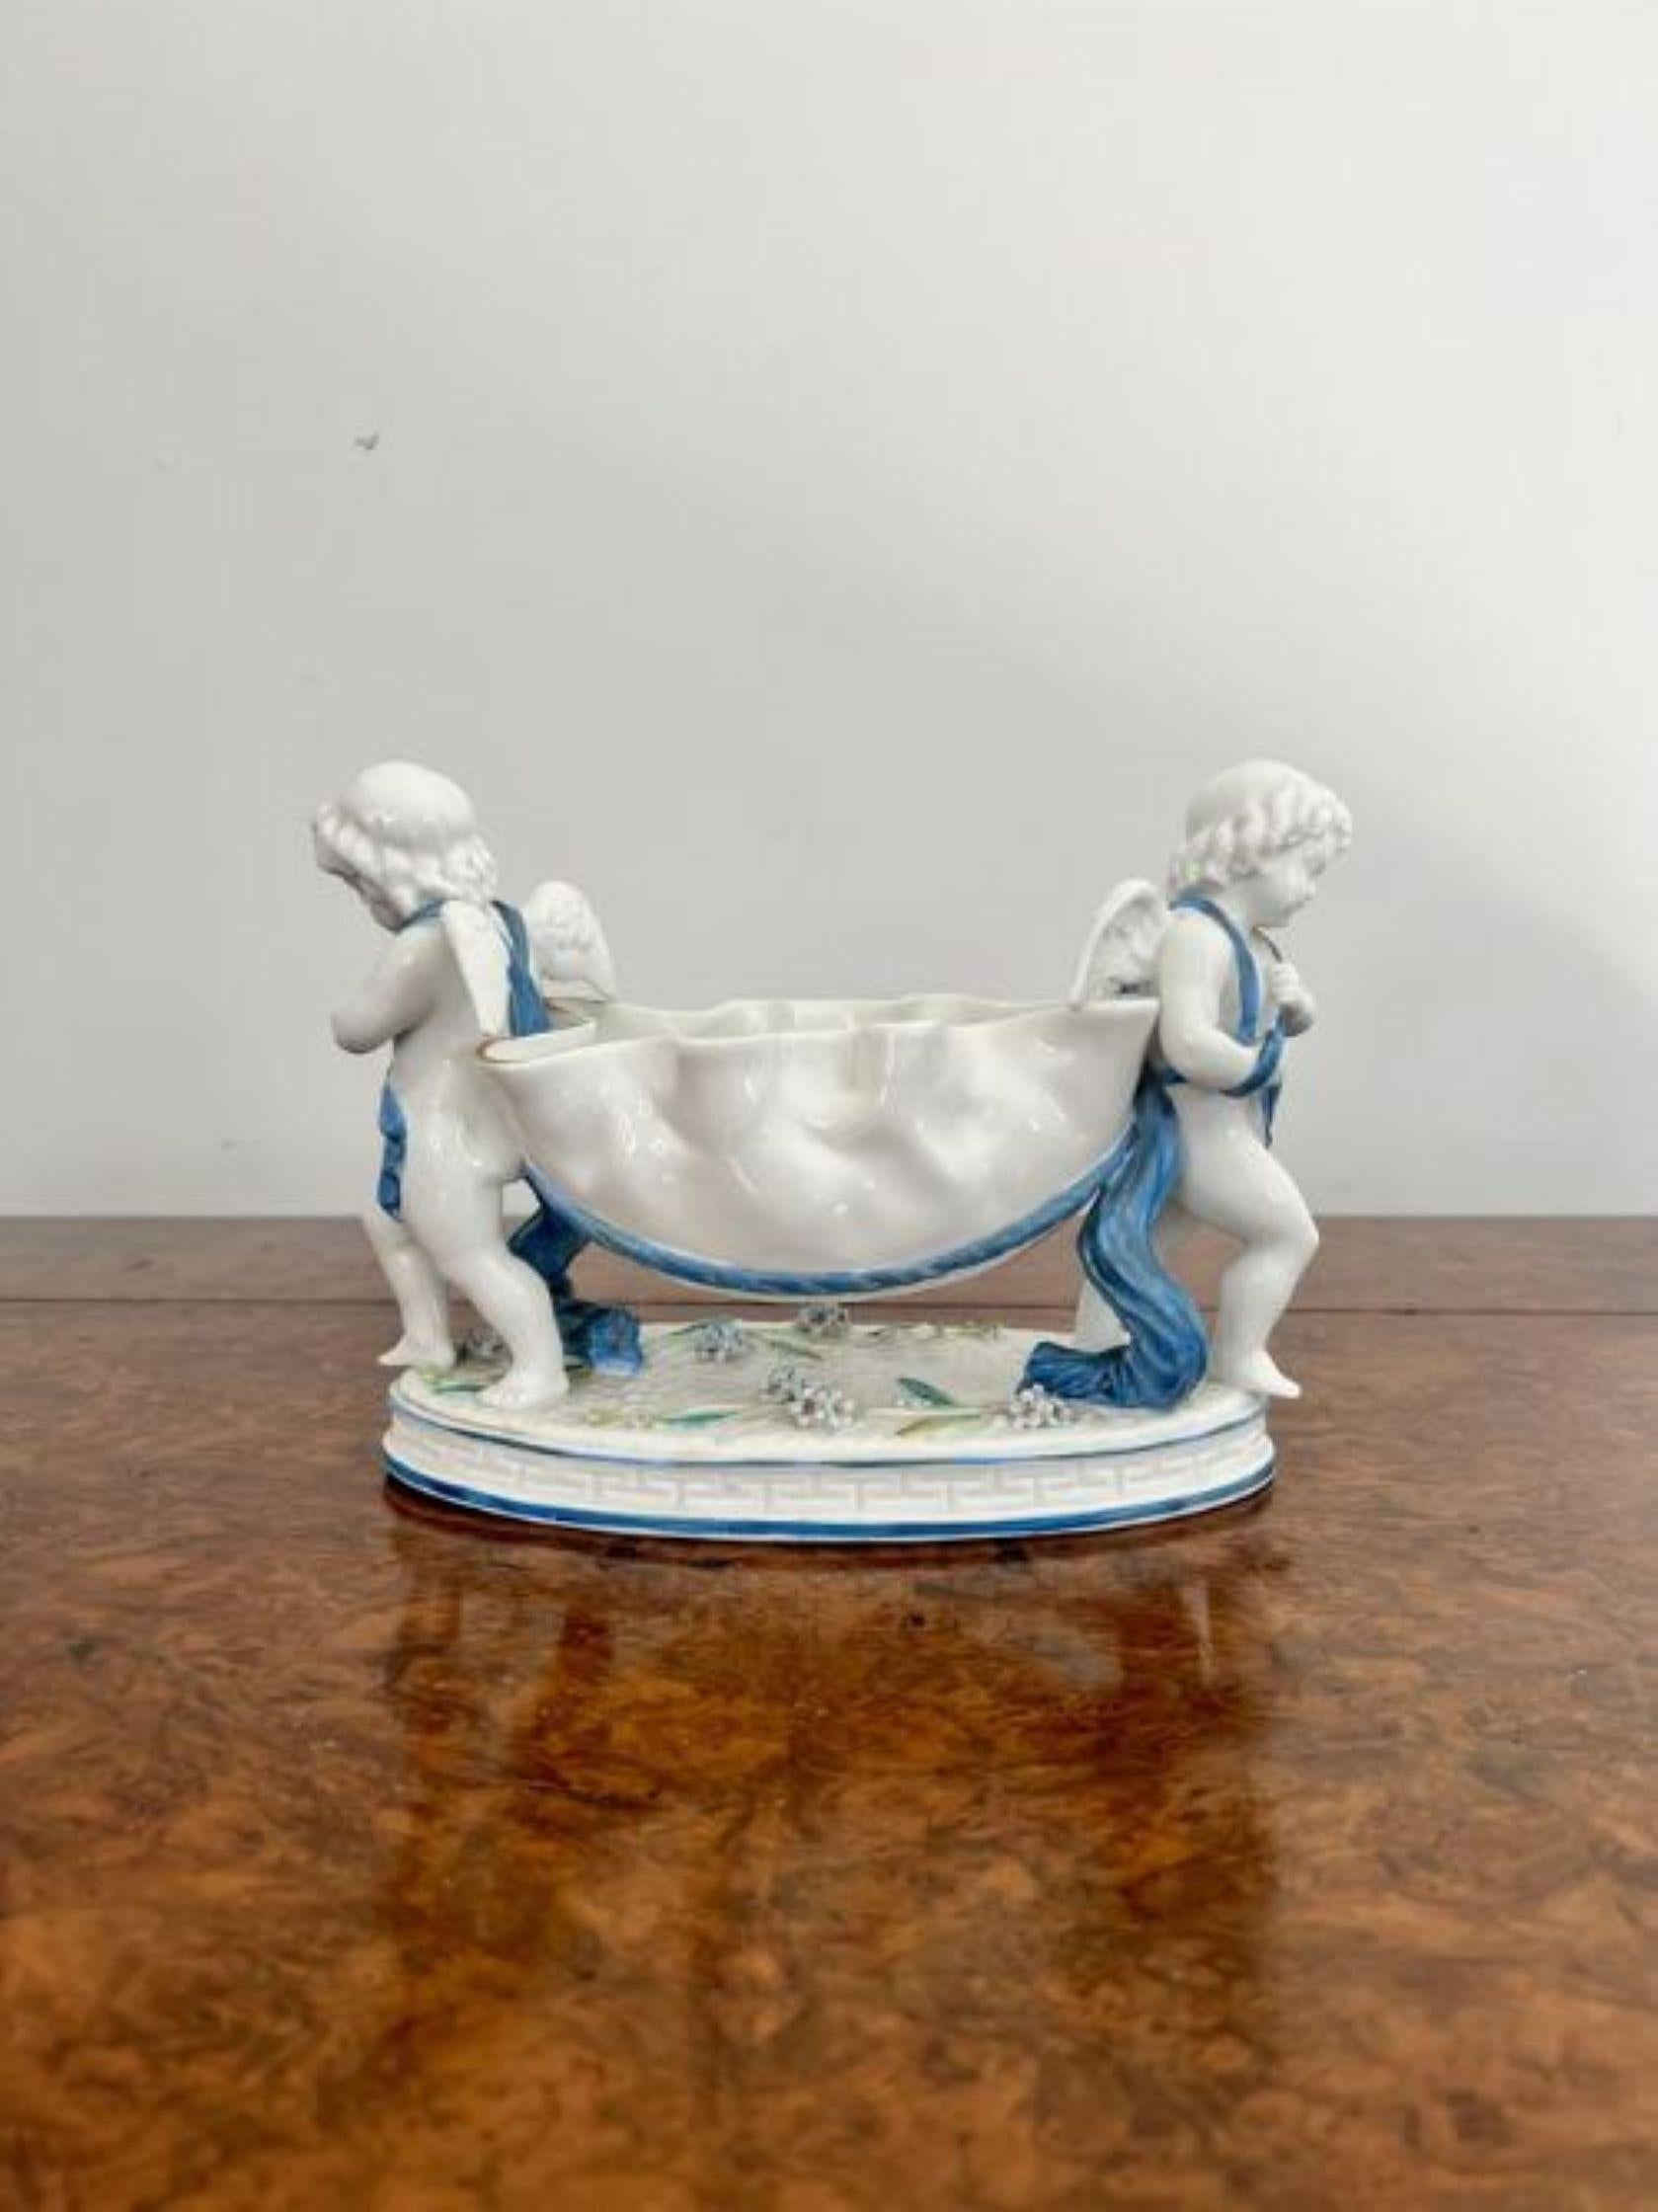 Antike kontinentale Porzellangruppe in viktorianischer Qualität mit zwei Putten, die eine geformte Schale tragen, die auf einem ovalen Sockel steht, in wunderschönen blauen und weißen Farben.